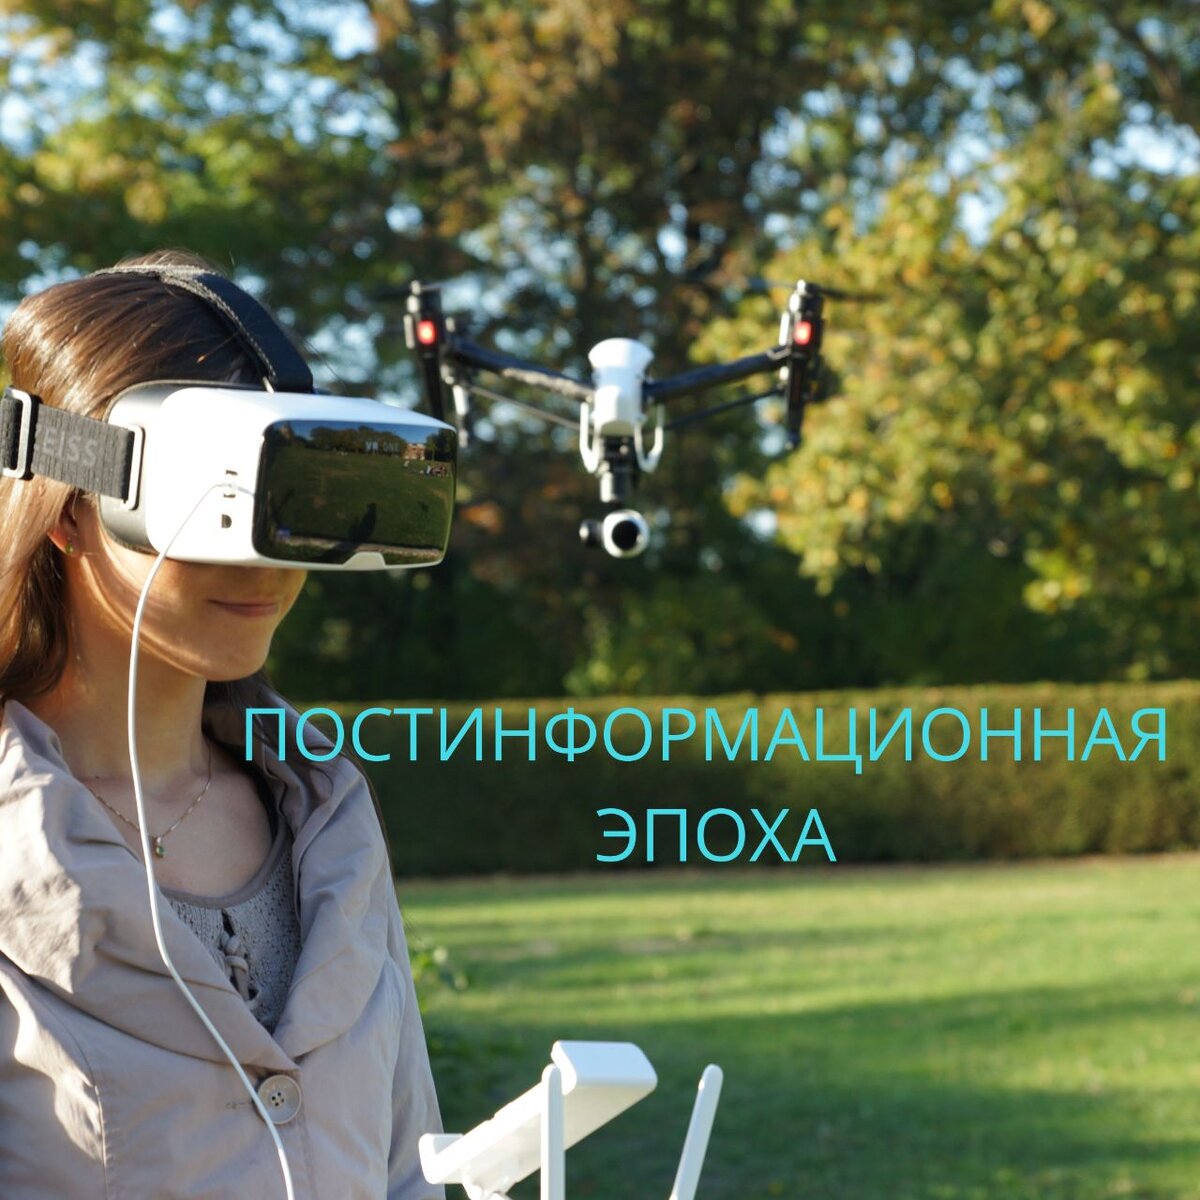 Дроны vr. Квадрокоптер очки виртуальной реальности. Человек с квадрокоптером. VR шлем квадрокоптер. Дрон с очками виртуальной реальности.